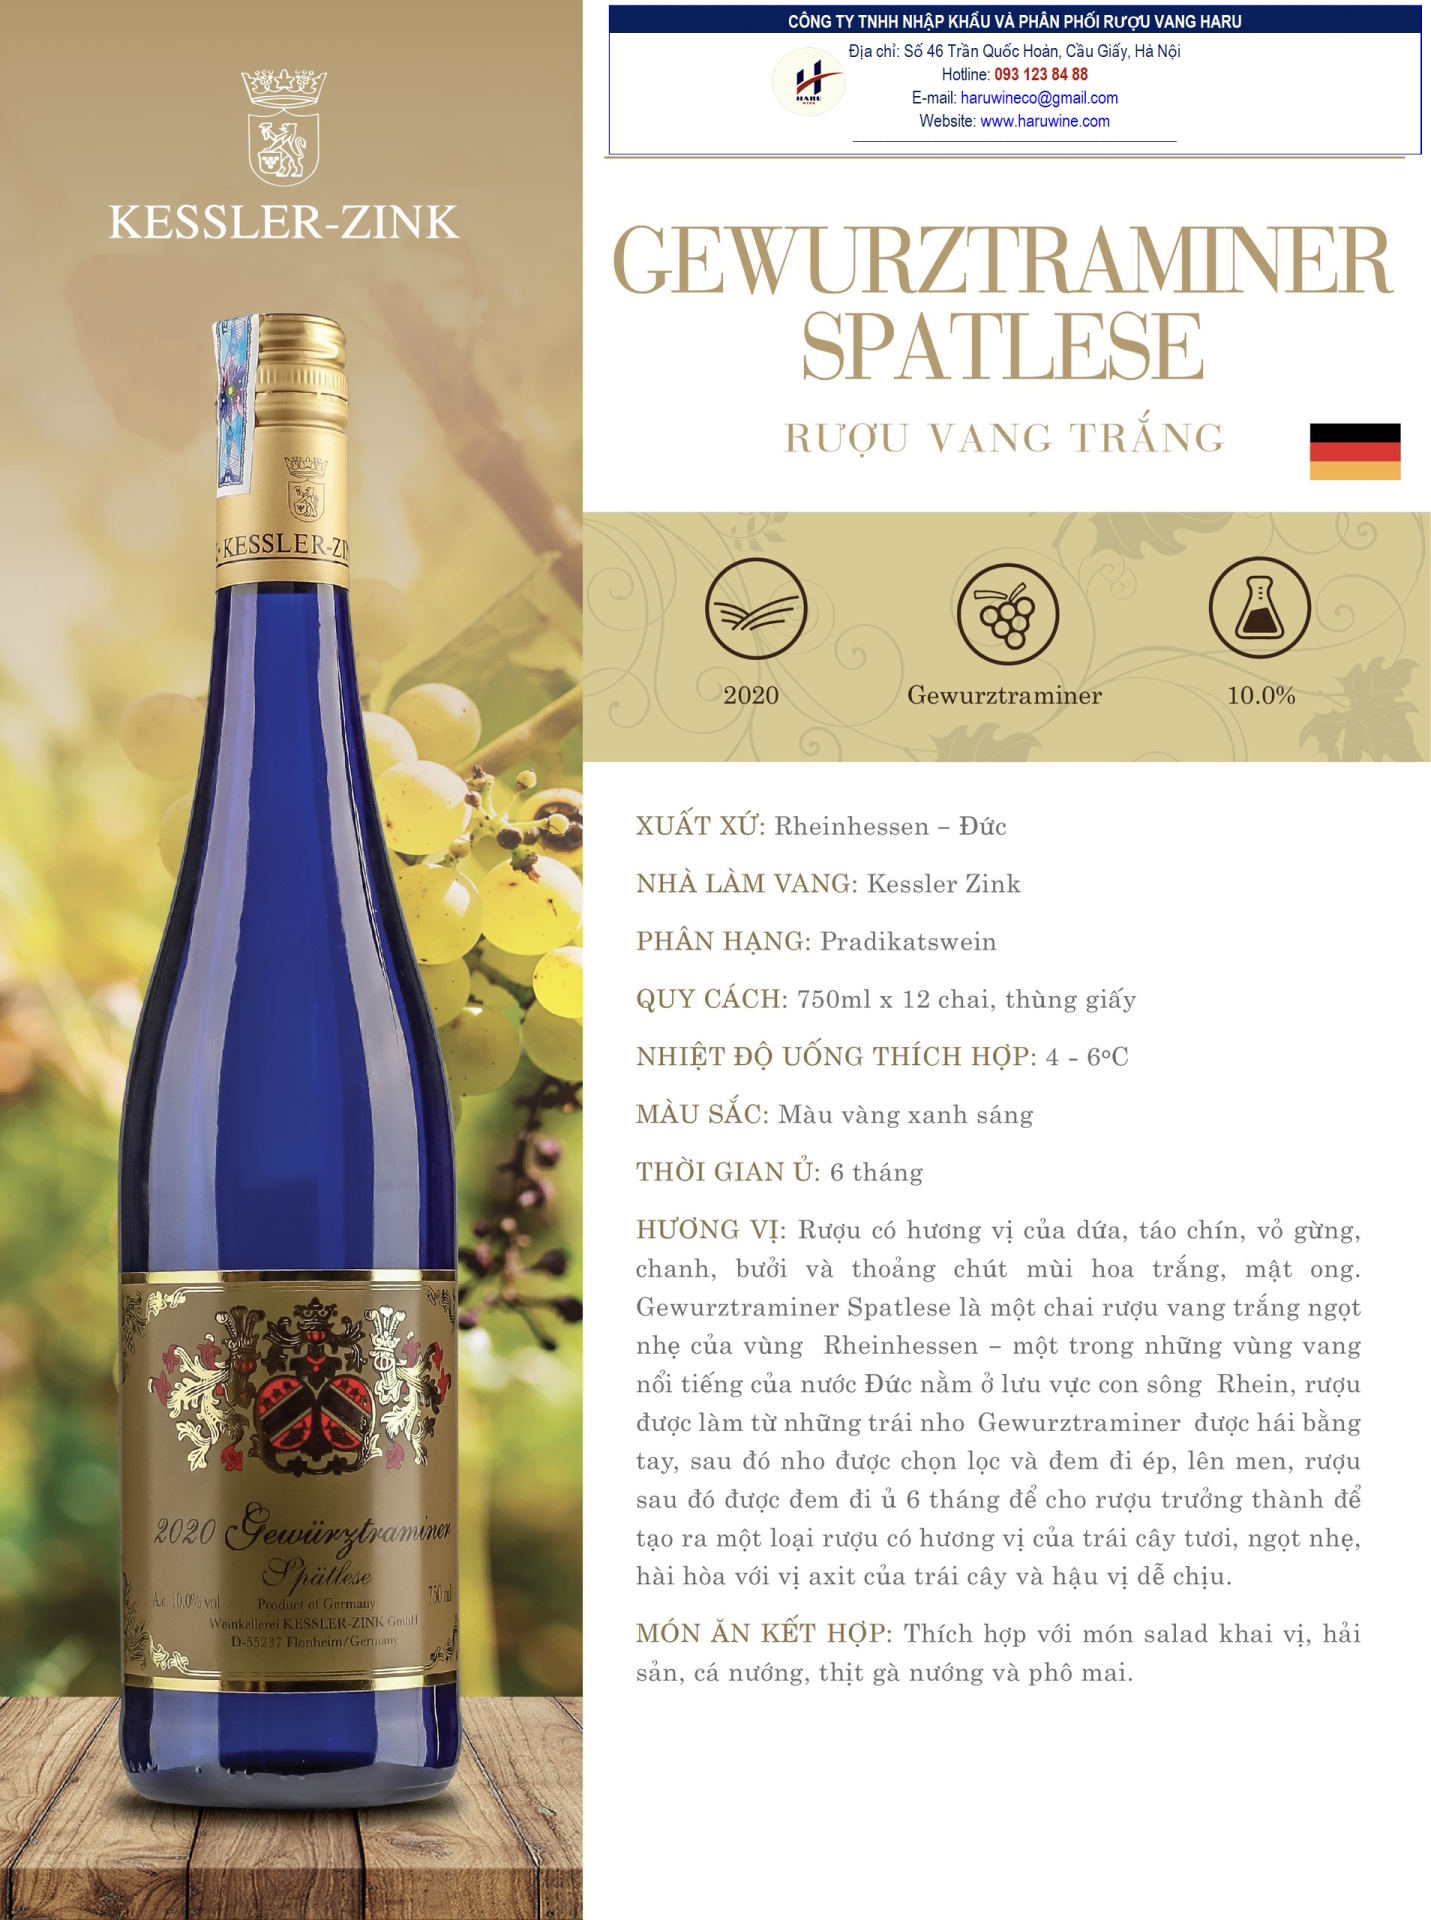 Rượu vang trắng Gewurztraminer spatlese